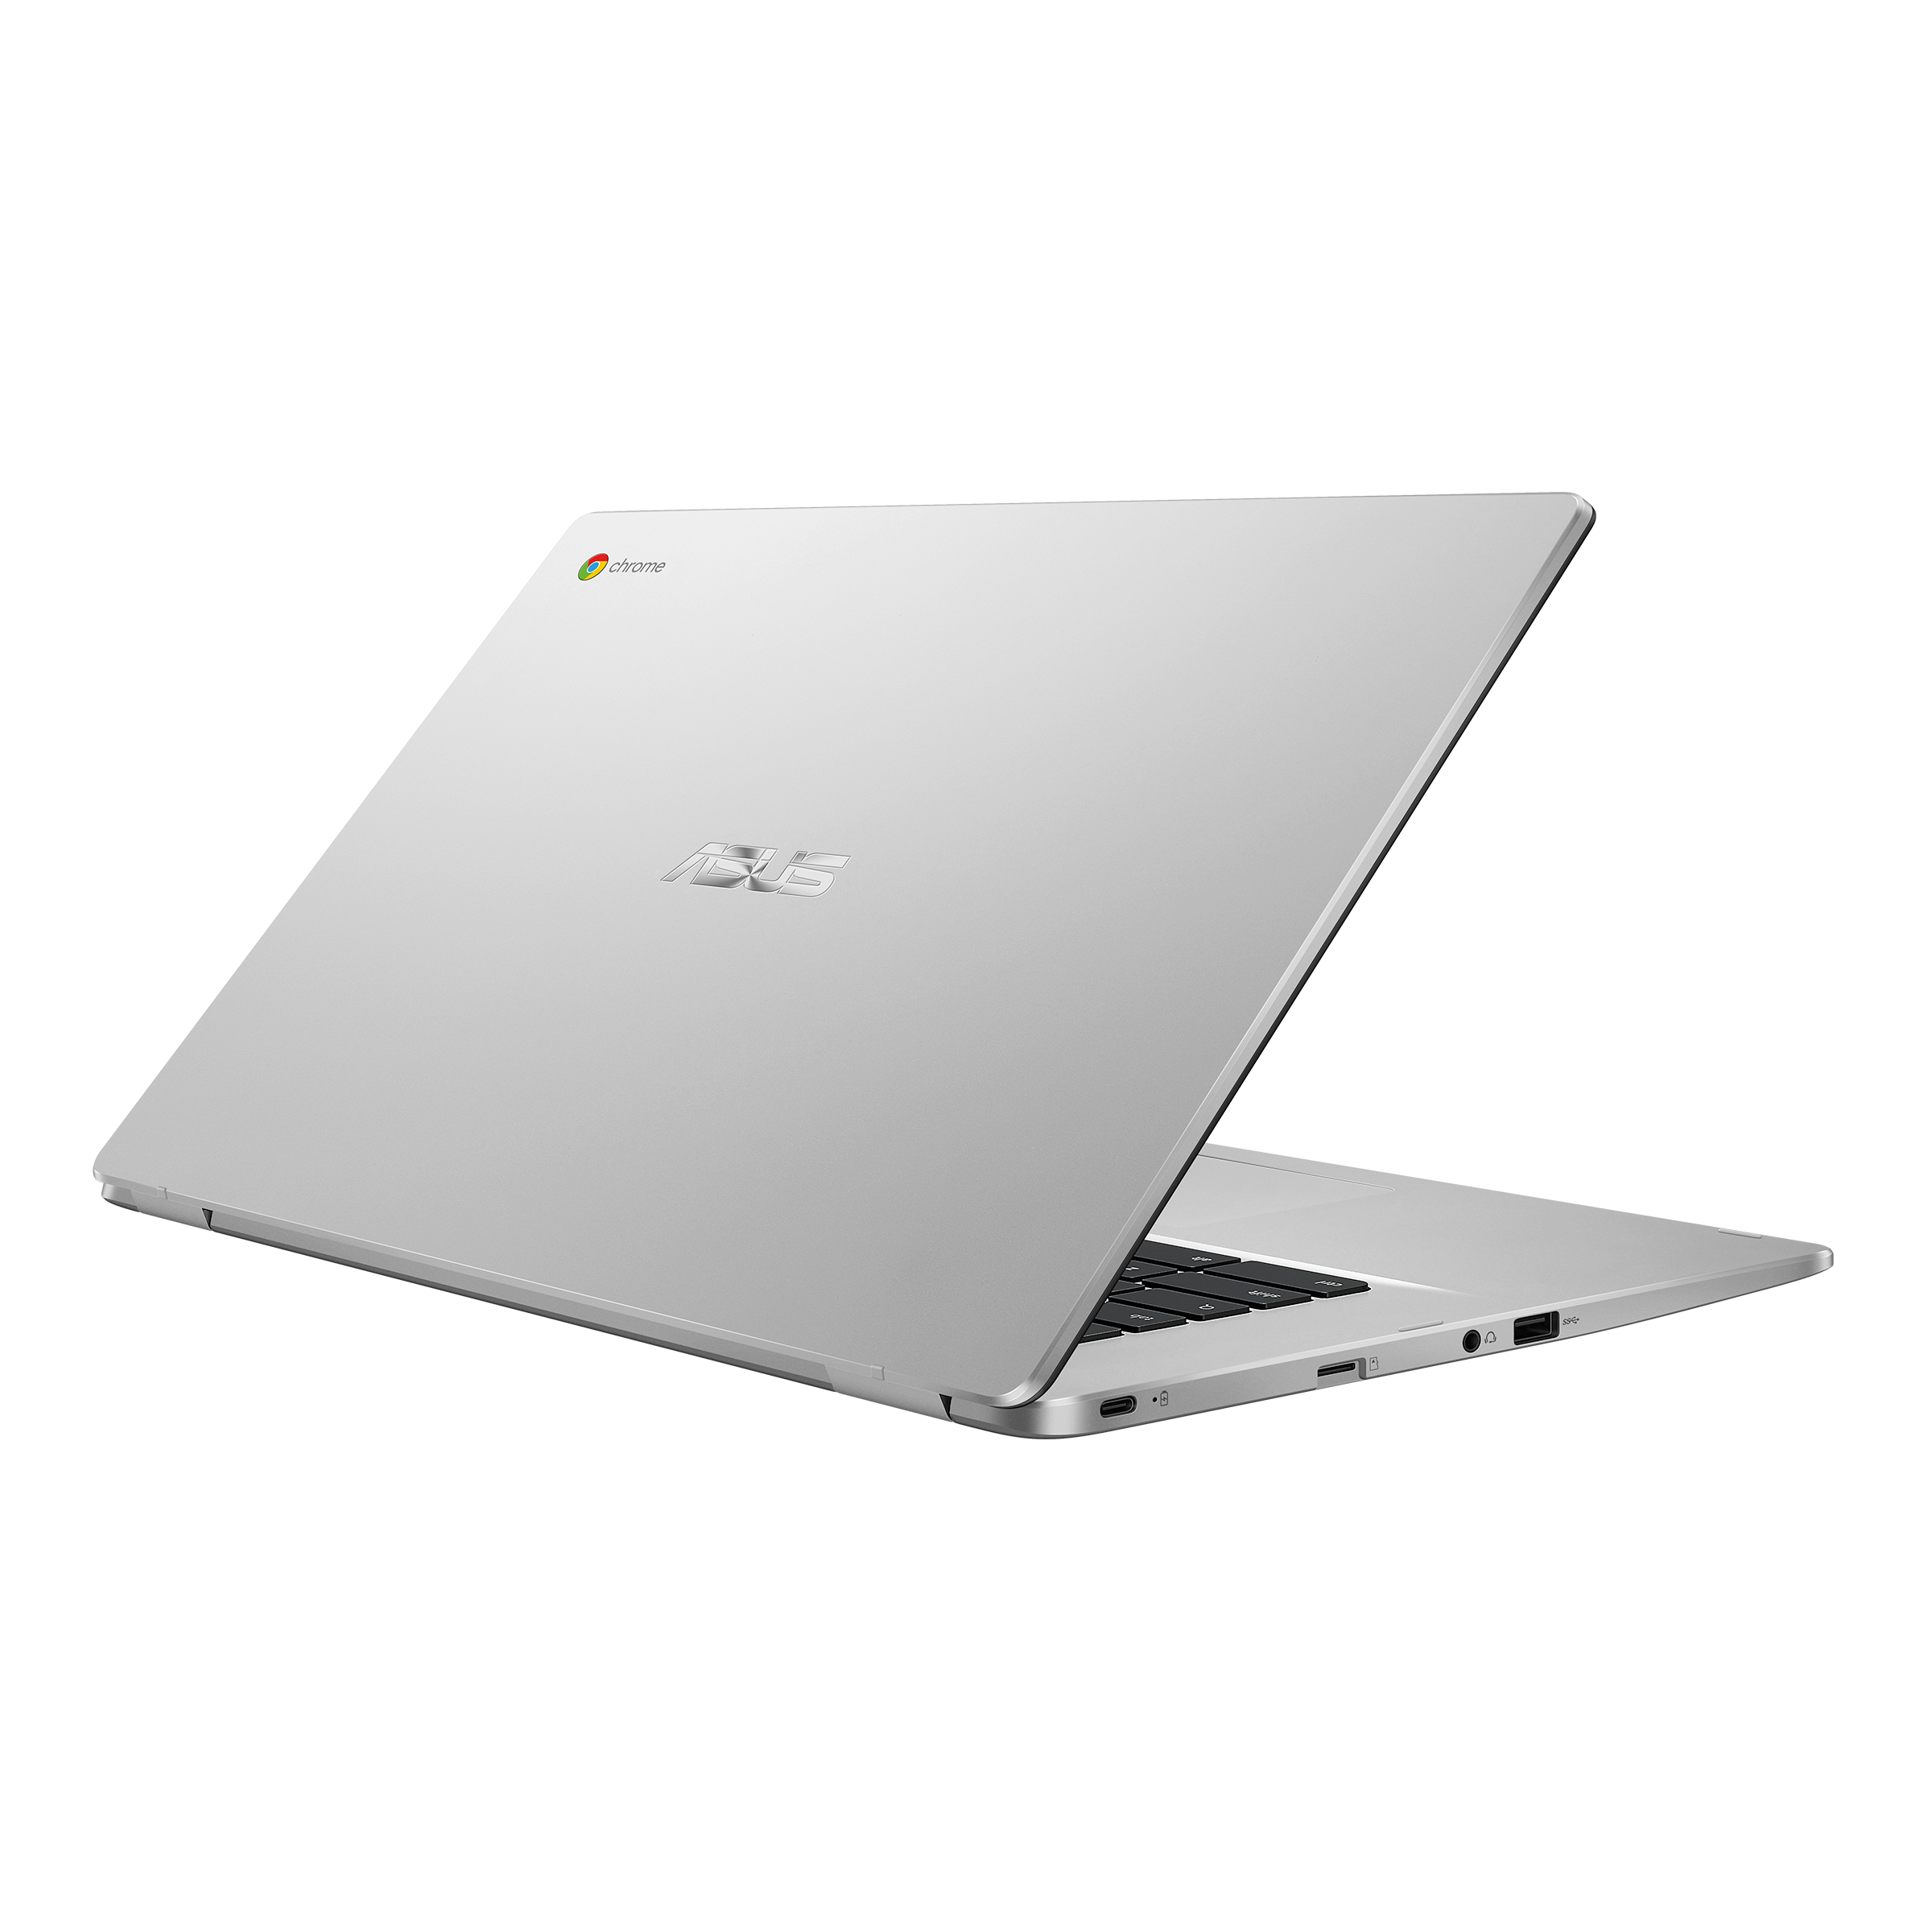 ASUS Chromebook C523